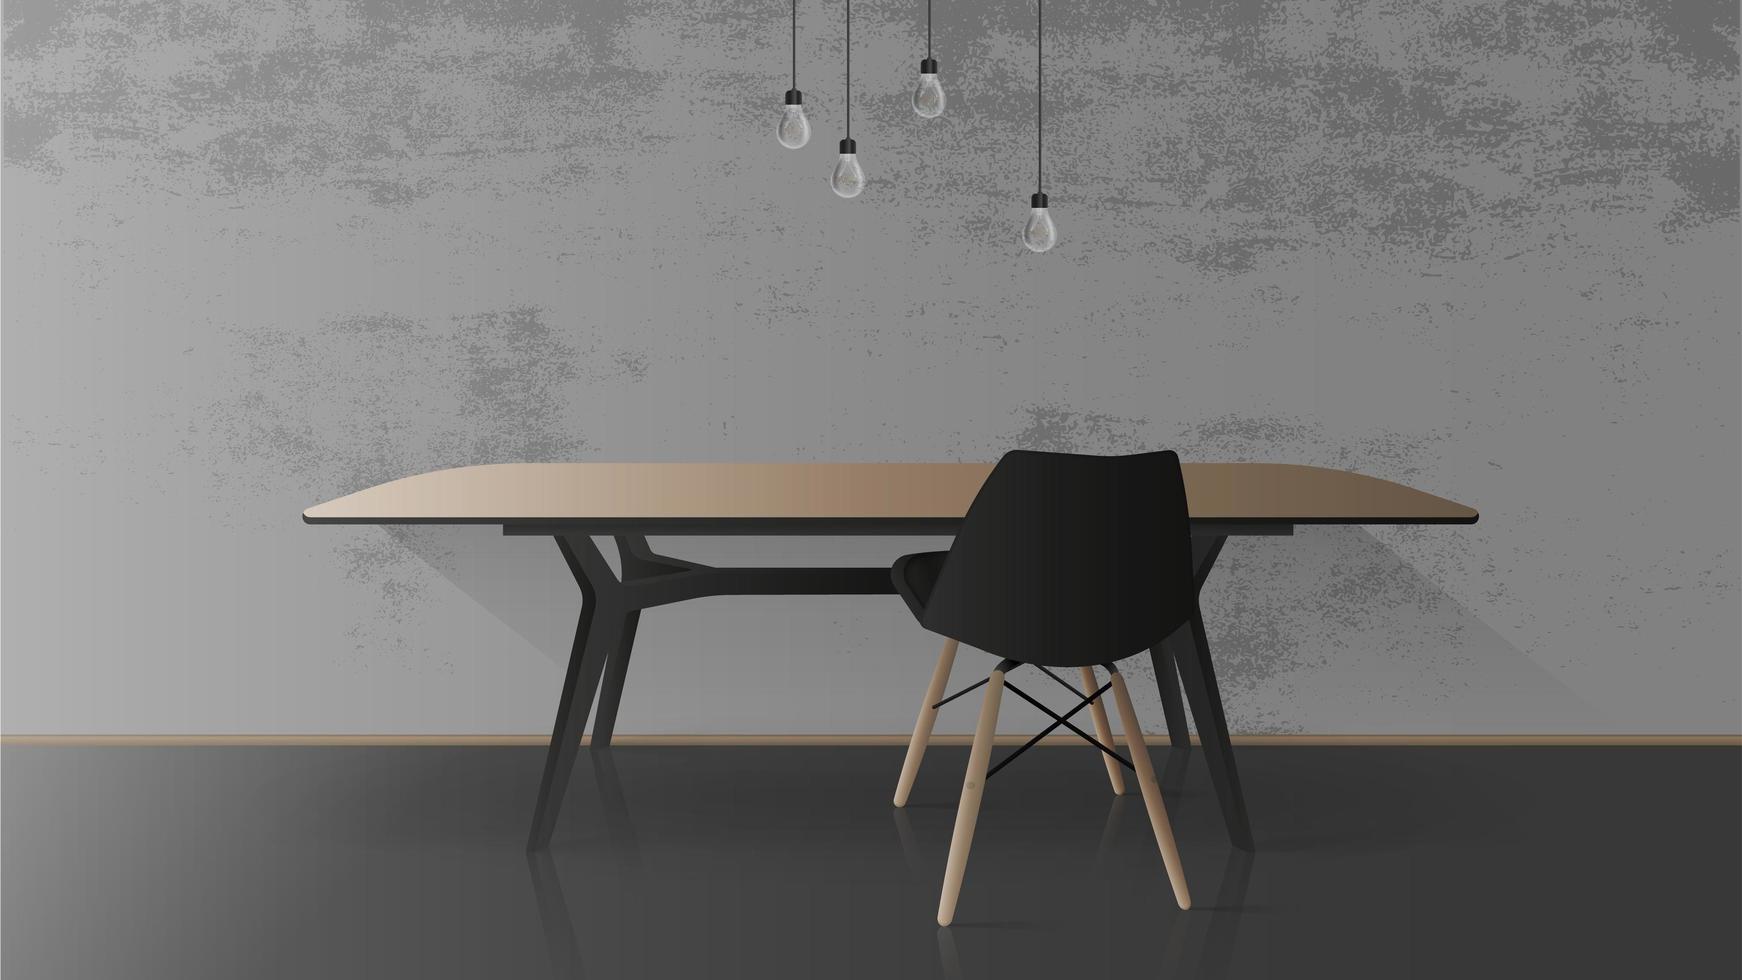 Holztisch mit schwarzem Metallgestell. schwarzer Stuhl. leerer tisch, graue betonwand. Vektor-Illustration vektor